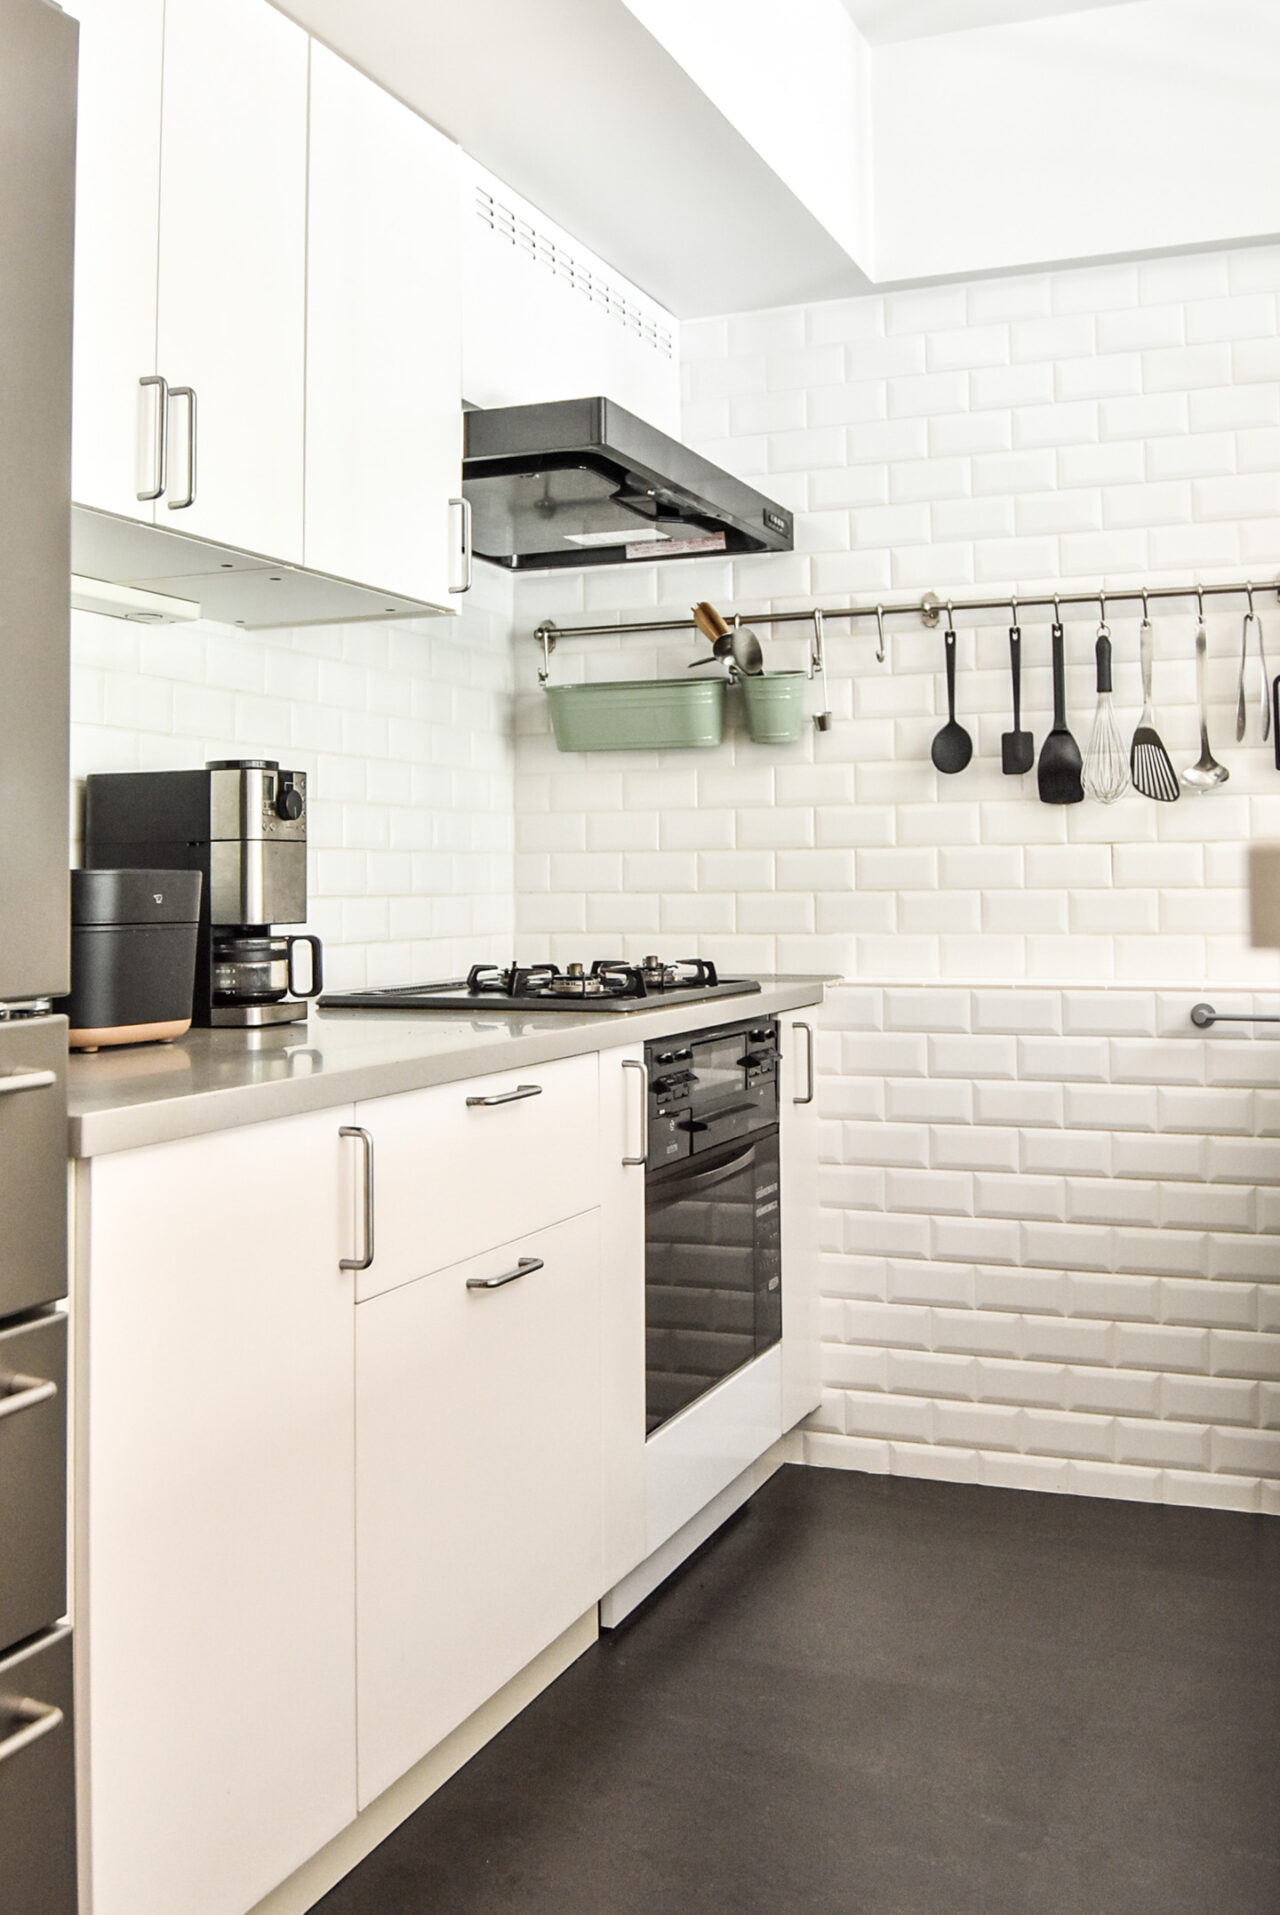 モダンで明るいキッチン。白いタイルとキャビネット、ステンレス製の調理器具、コーヒーメーカーが配置され、清潔で整然とした印象を与えます。